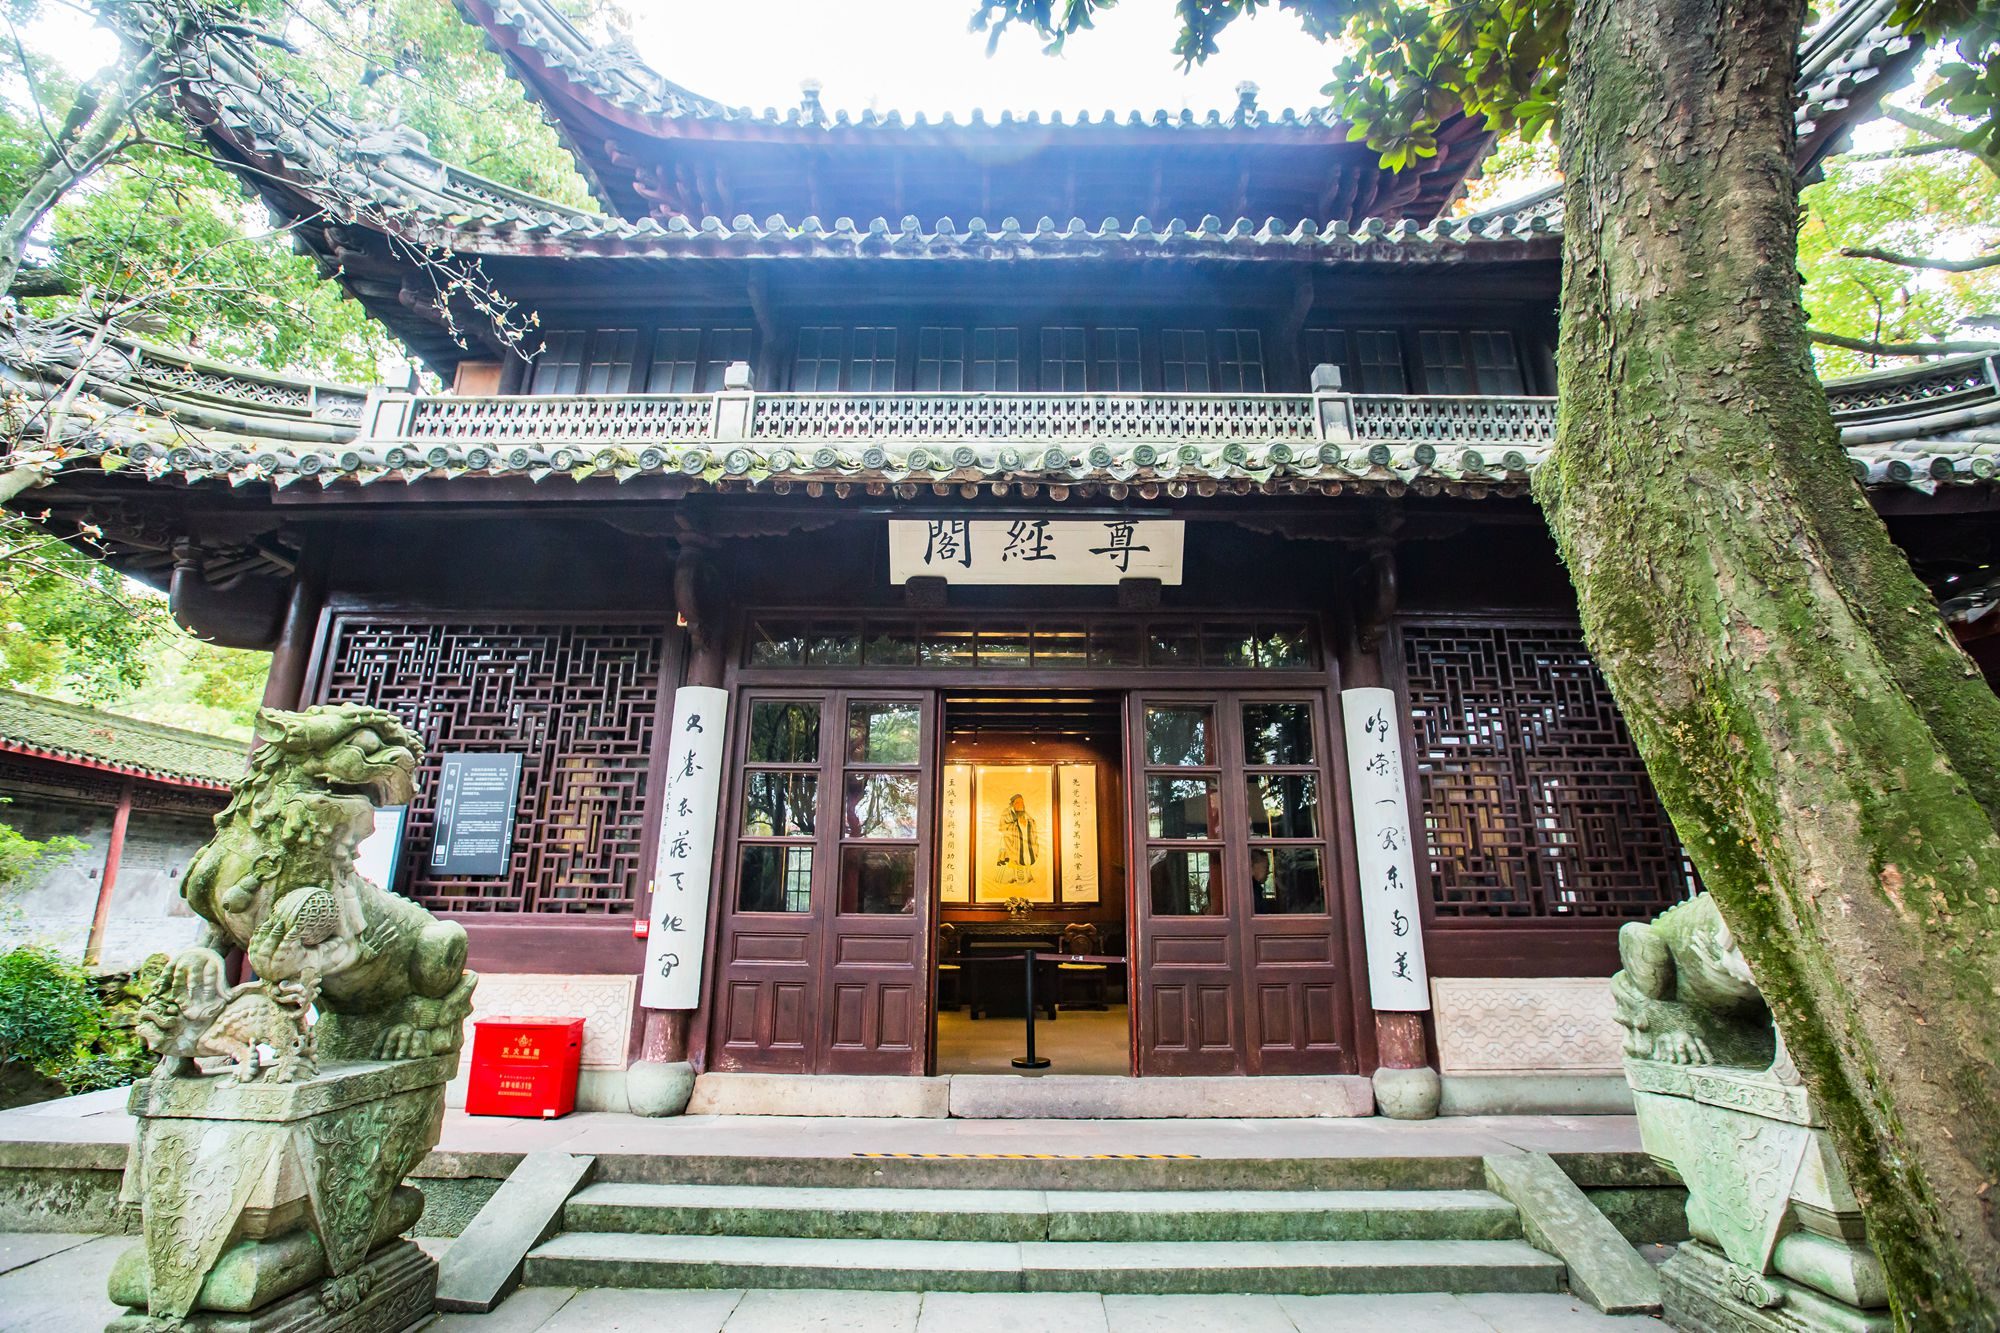 宁波天一阁,中国现存最早的私家藏书楼,历经400多年的传奇